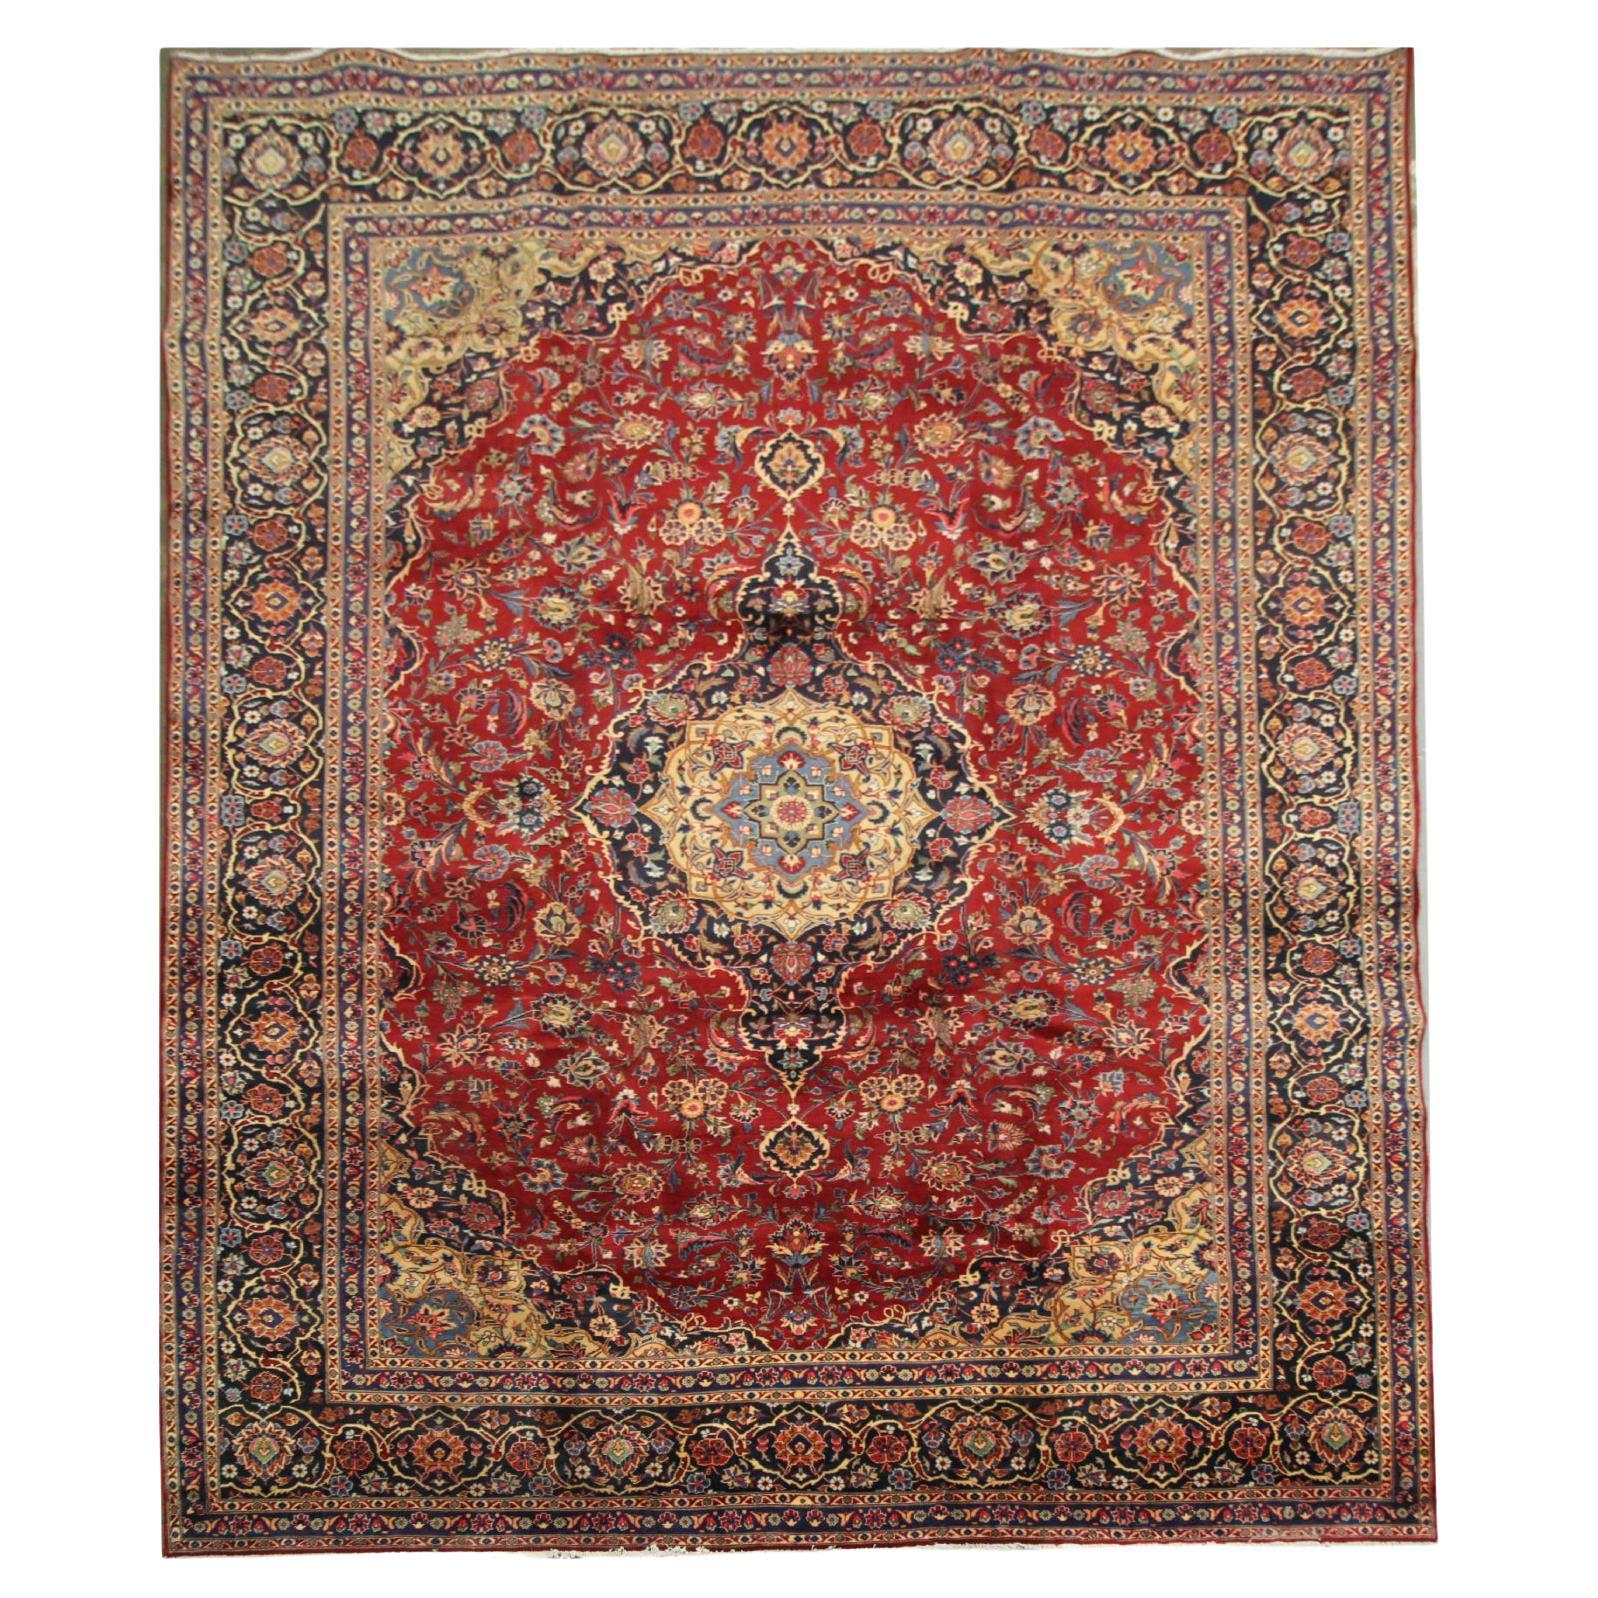 Large Turkish Vintage Rug Handmade Carpet Red Wool Oriental Area